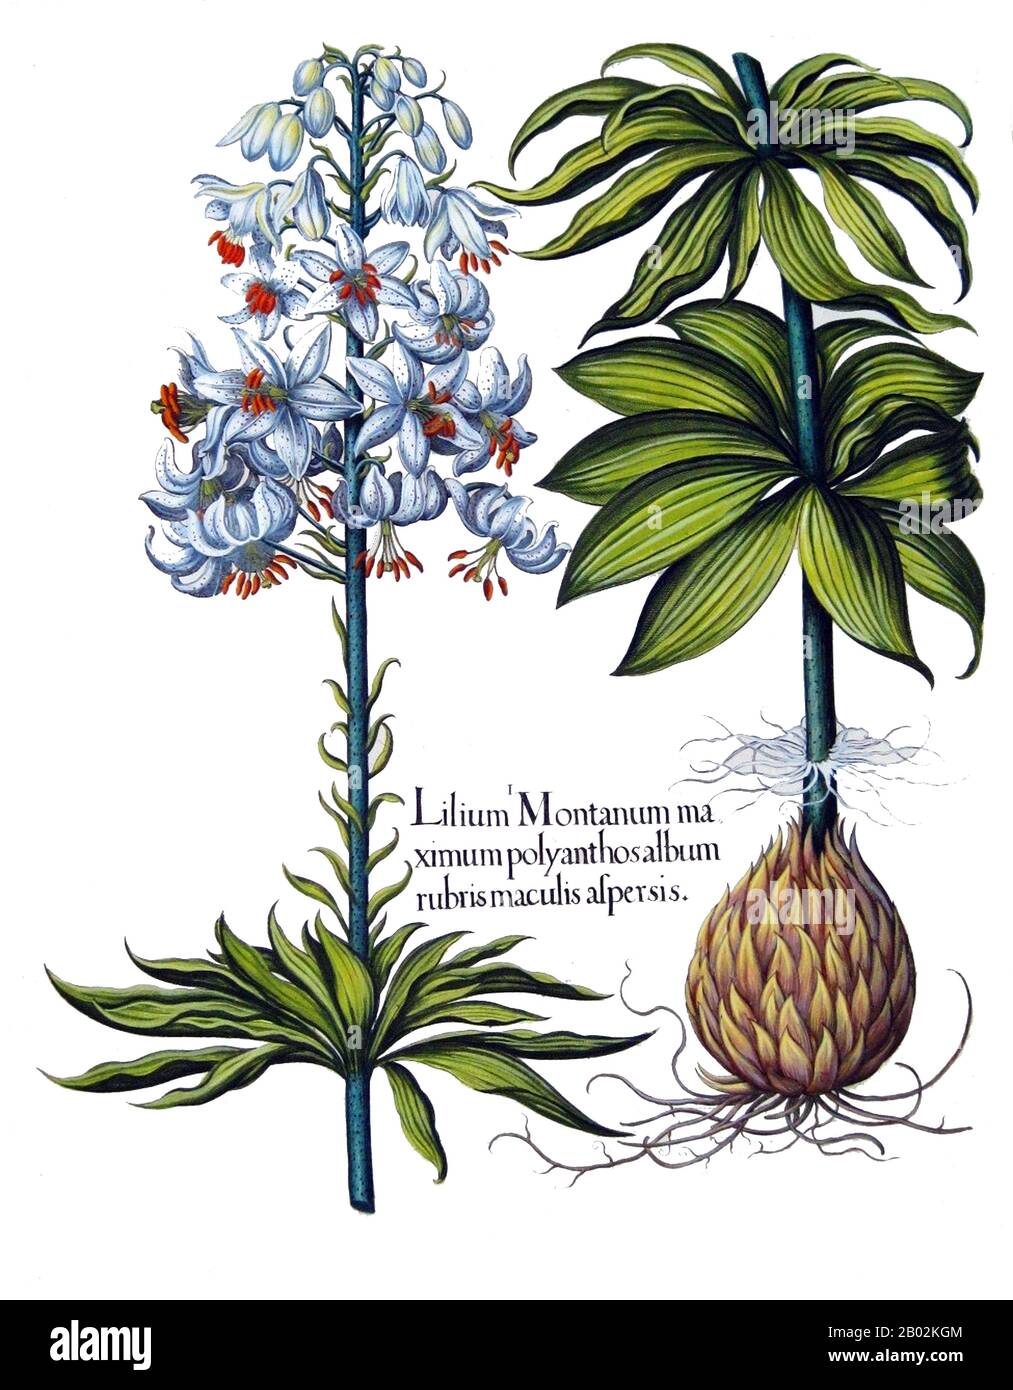 Lilium (miembros de los cuales son lirios verdaderos) es un género de  plantas herbáceas que crecen a partir de bulbos, todas con grandes flores  prominentes. Los lirios son un grupo de plantas